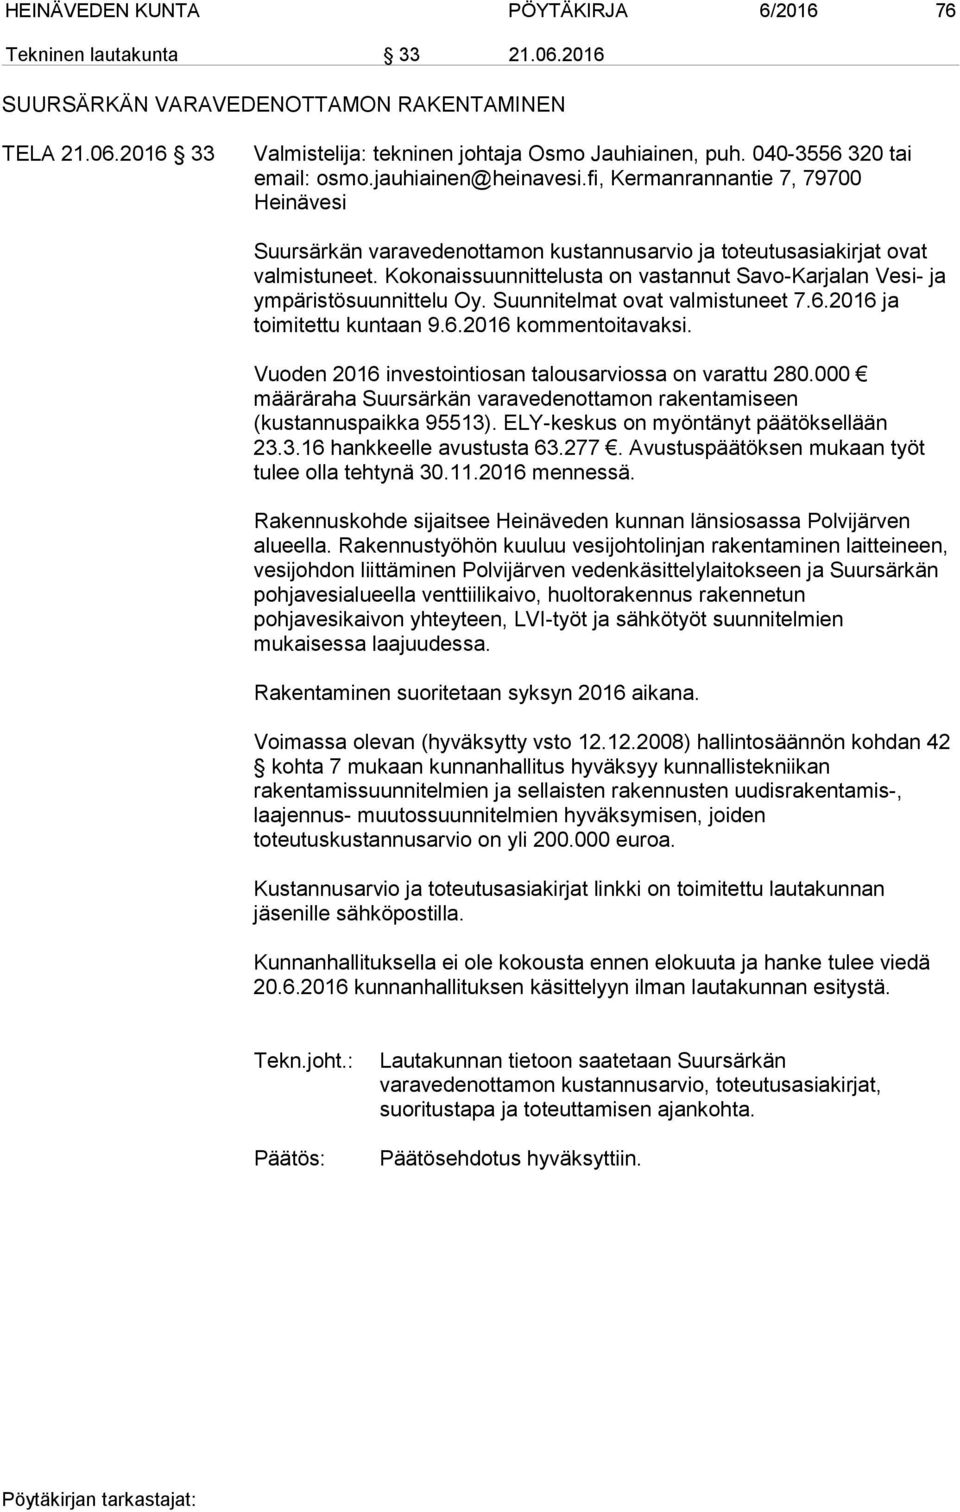 Kokonaissuunnittelusta on vastannut Savo-Karjalan Vesi- ja ympäristösuunnittelu Oy. Suunnitelmat ovat valmistuneet 7.6.2016 ja toimitettu kuntaan 9.6.2016 kommentoitavaksi.